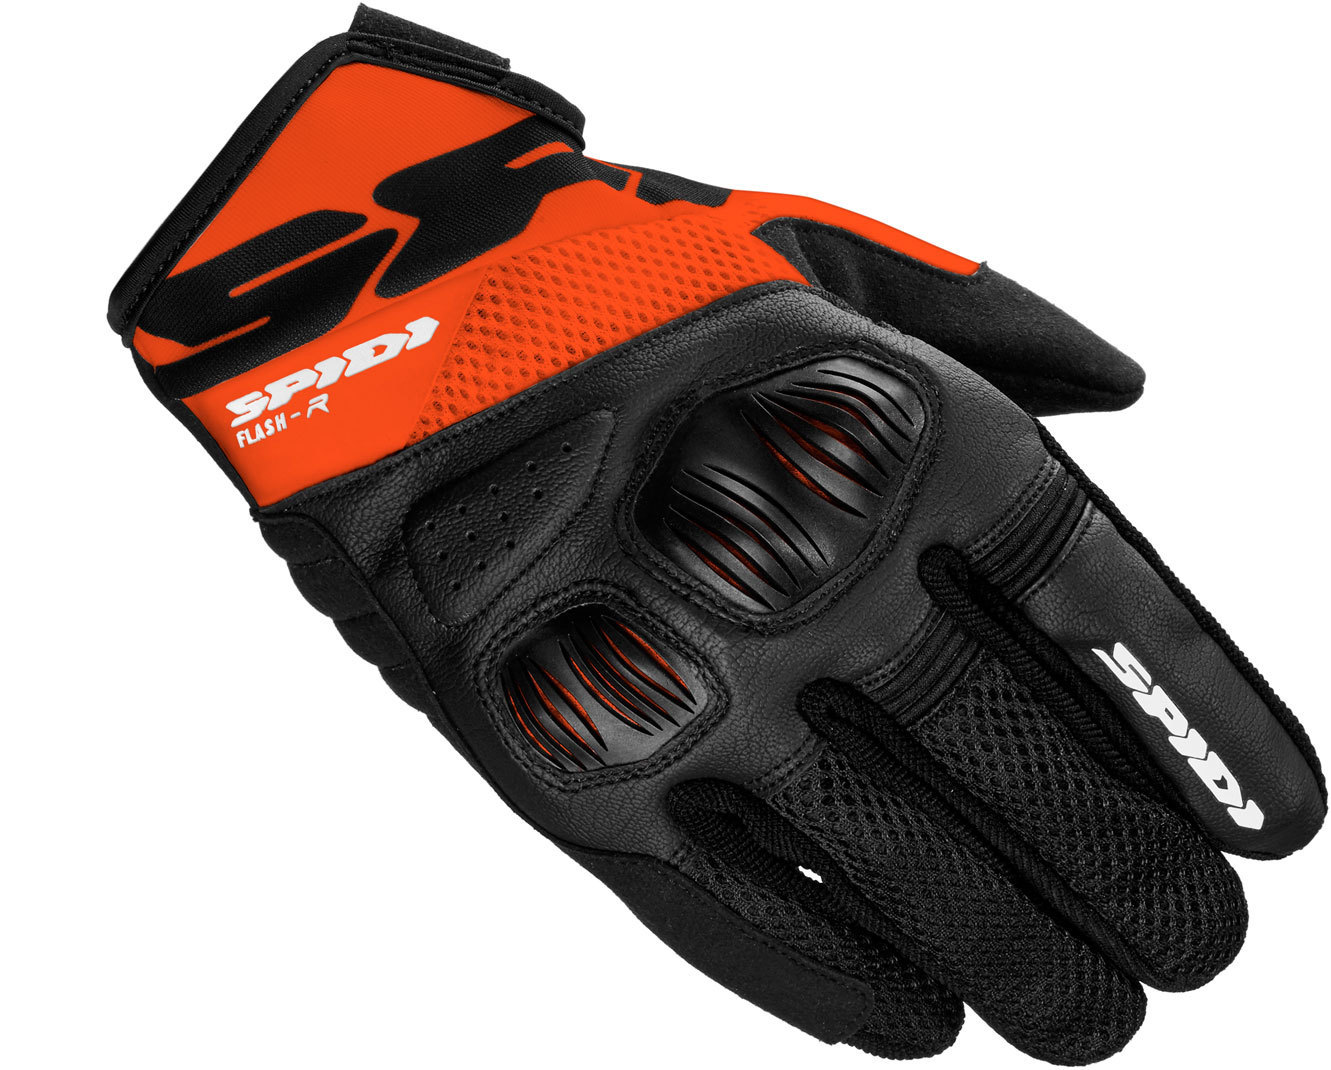 Spidi Flash-R Evo Handschuhe, schwarz-orange, Gre 2XL, schwarz-orange, Gre 2XL